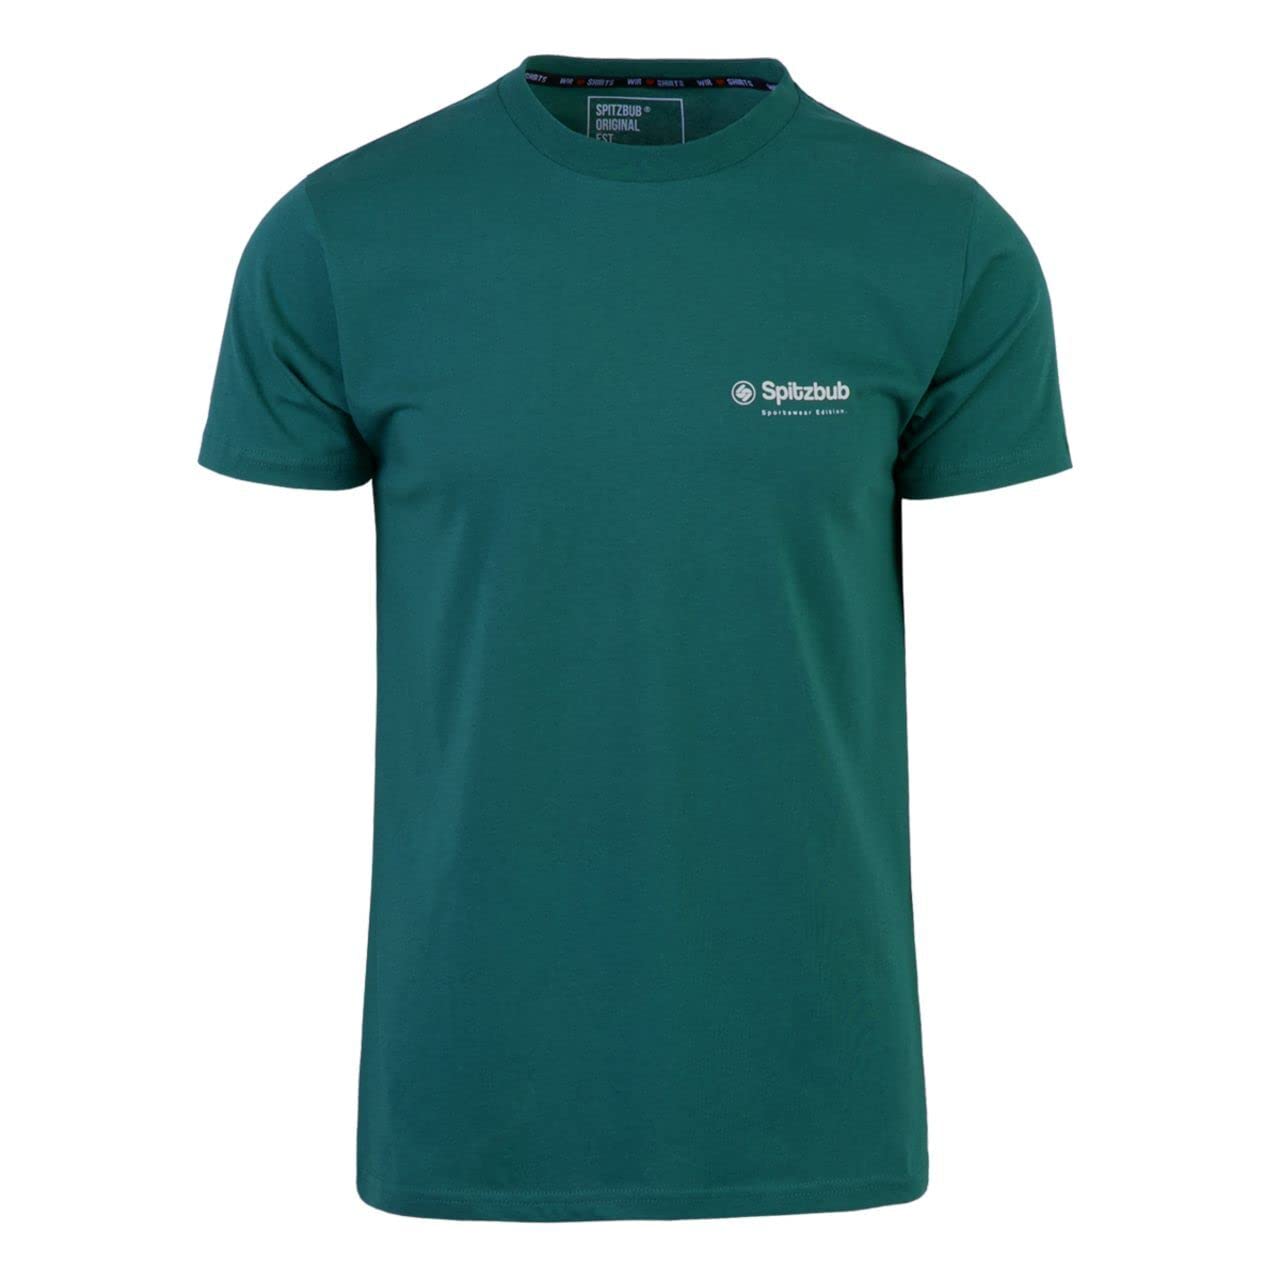 Spitzbub Herren T-Shirt Shirt mit Print oder Stick in Dunkelgrün/Petrol (M)